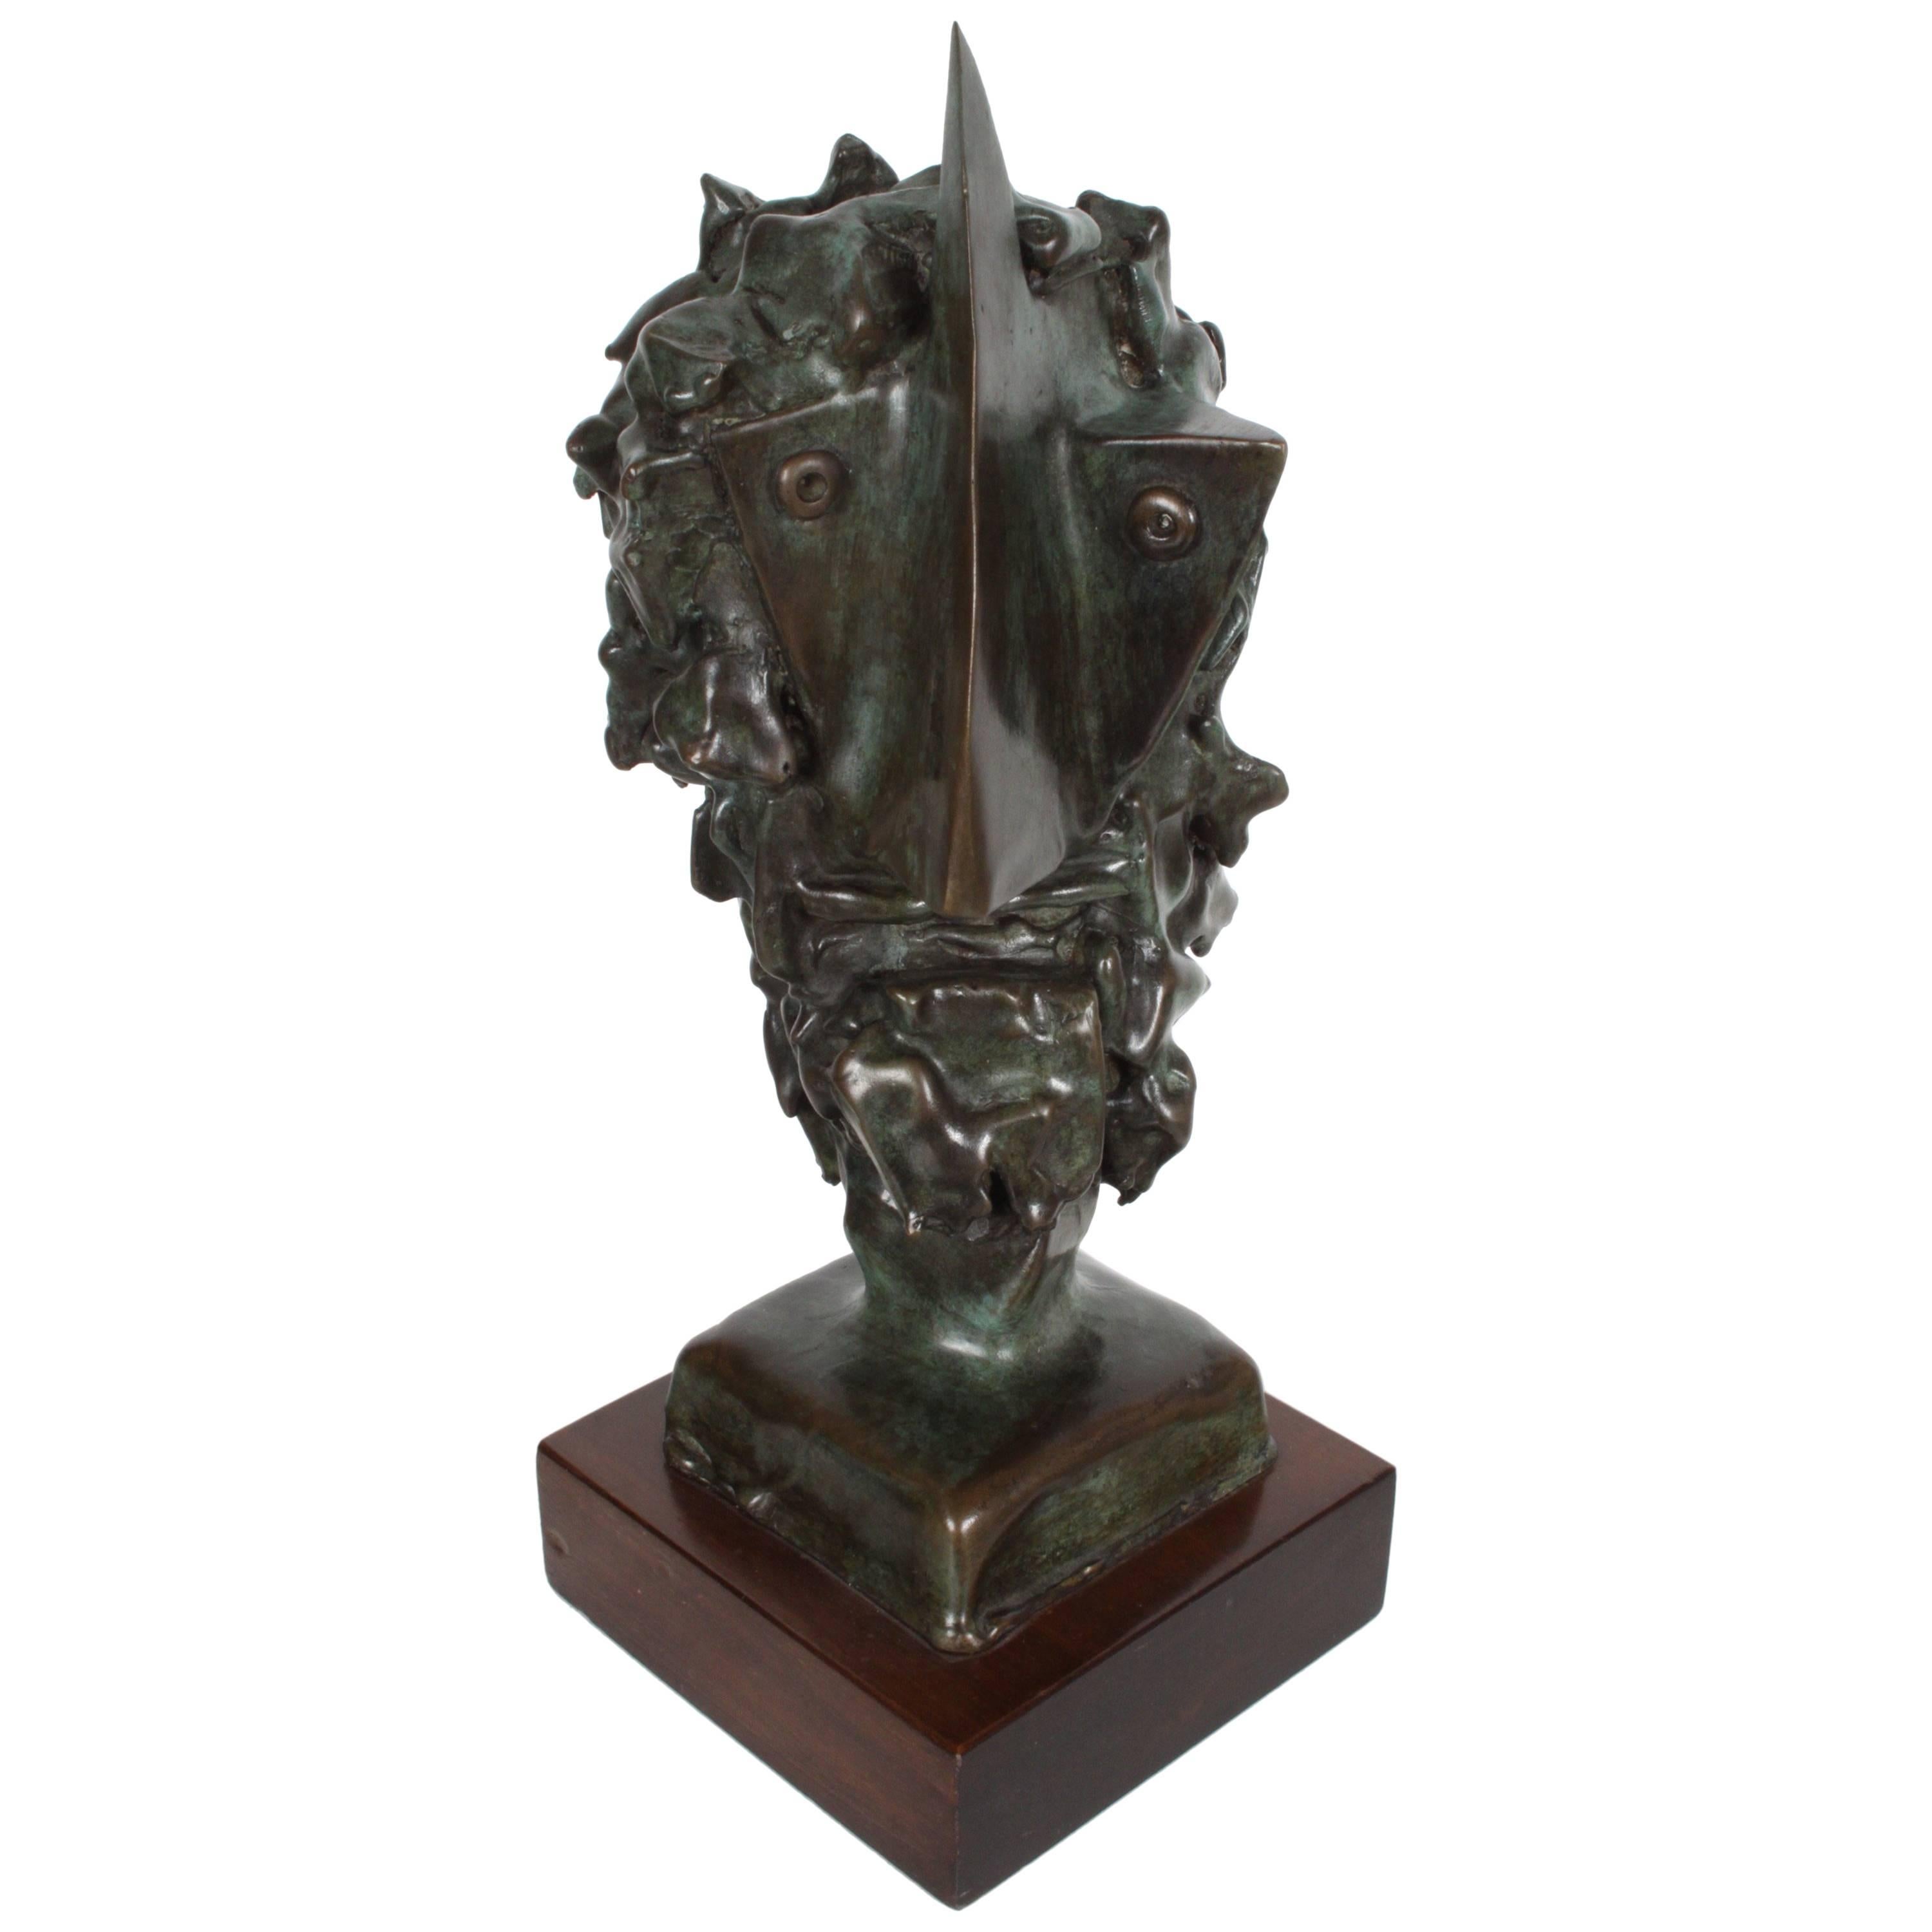 Jean Mahie Bronze Cubist Head Sculpture Titled Veneration For Sale